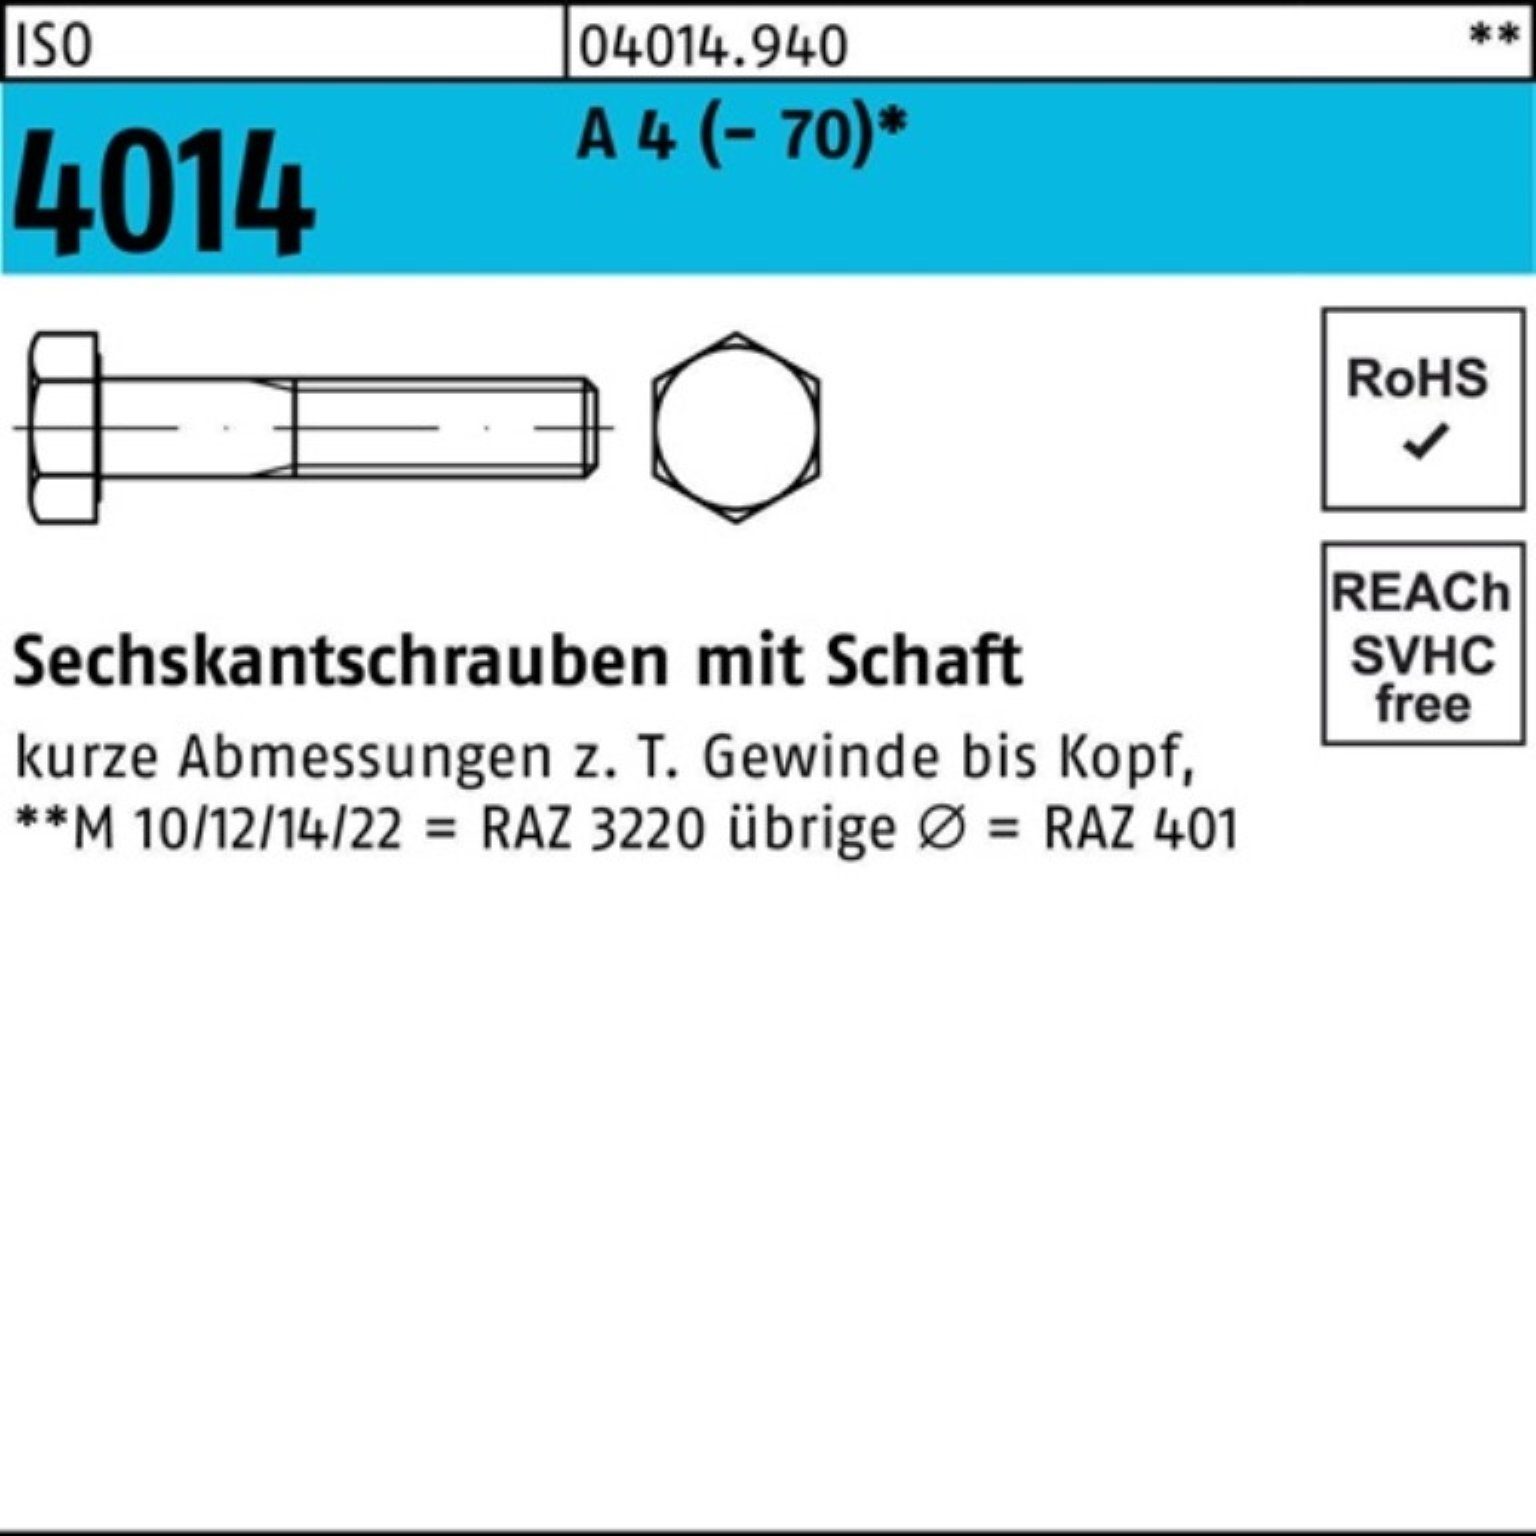 ISO 4014 (70) Pack A Sechskantschraube Schaft St Bufab 4 50 100er M16x Sechskantschraube 60